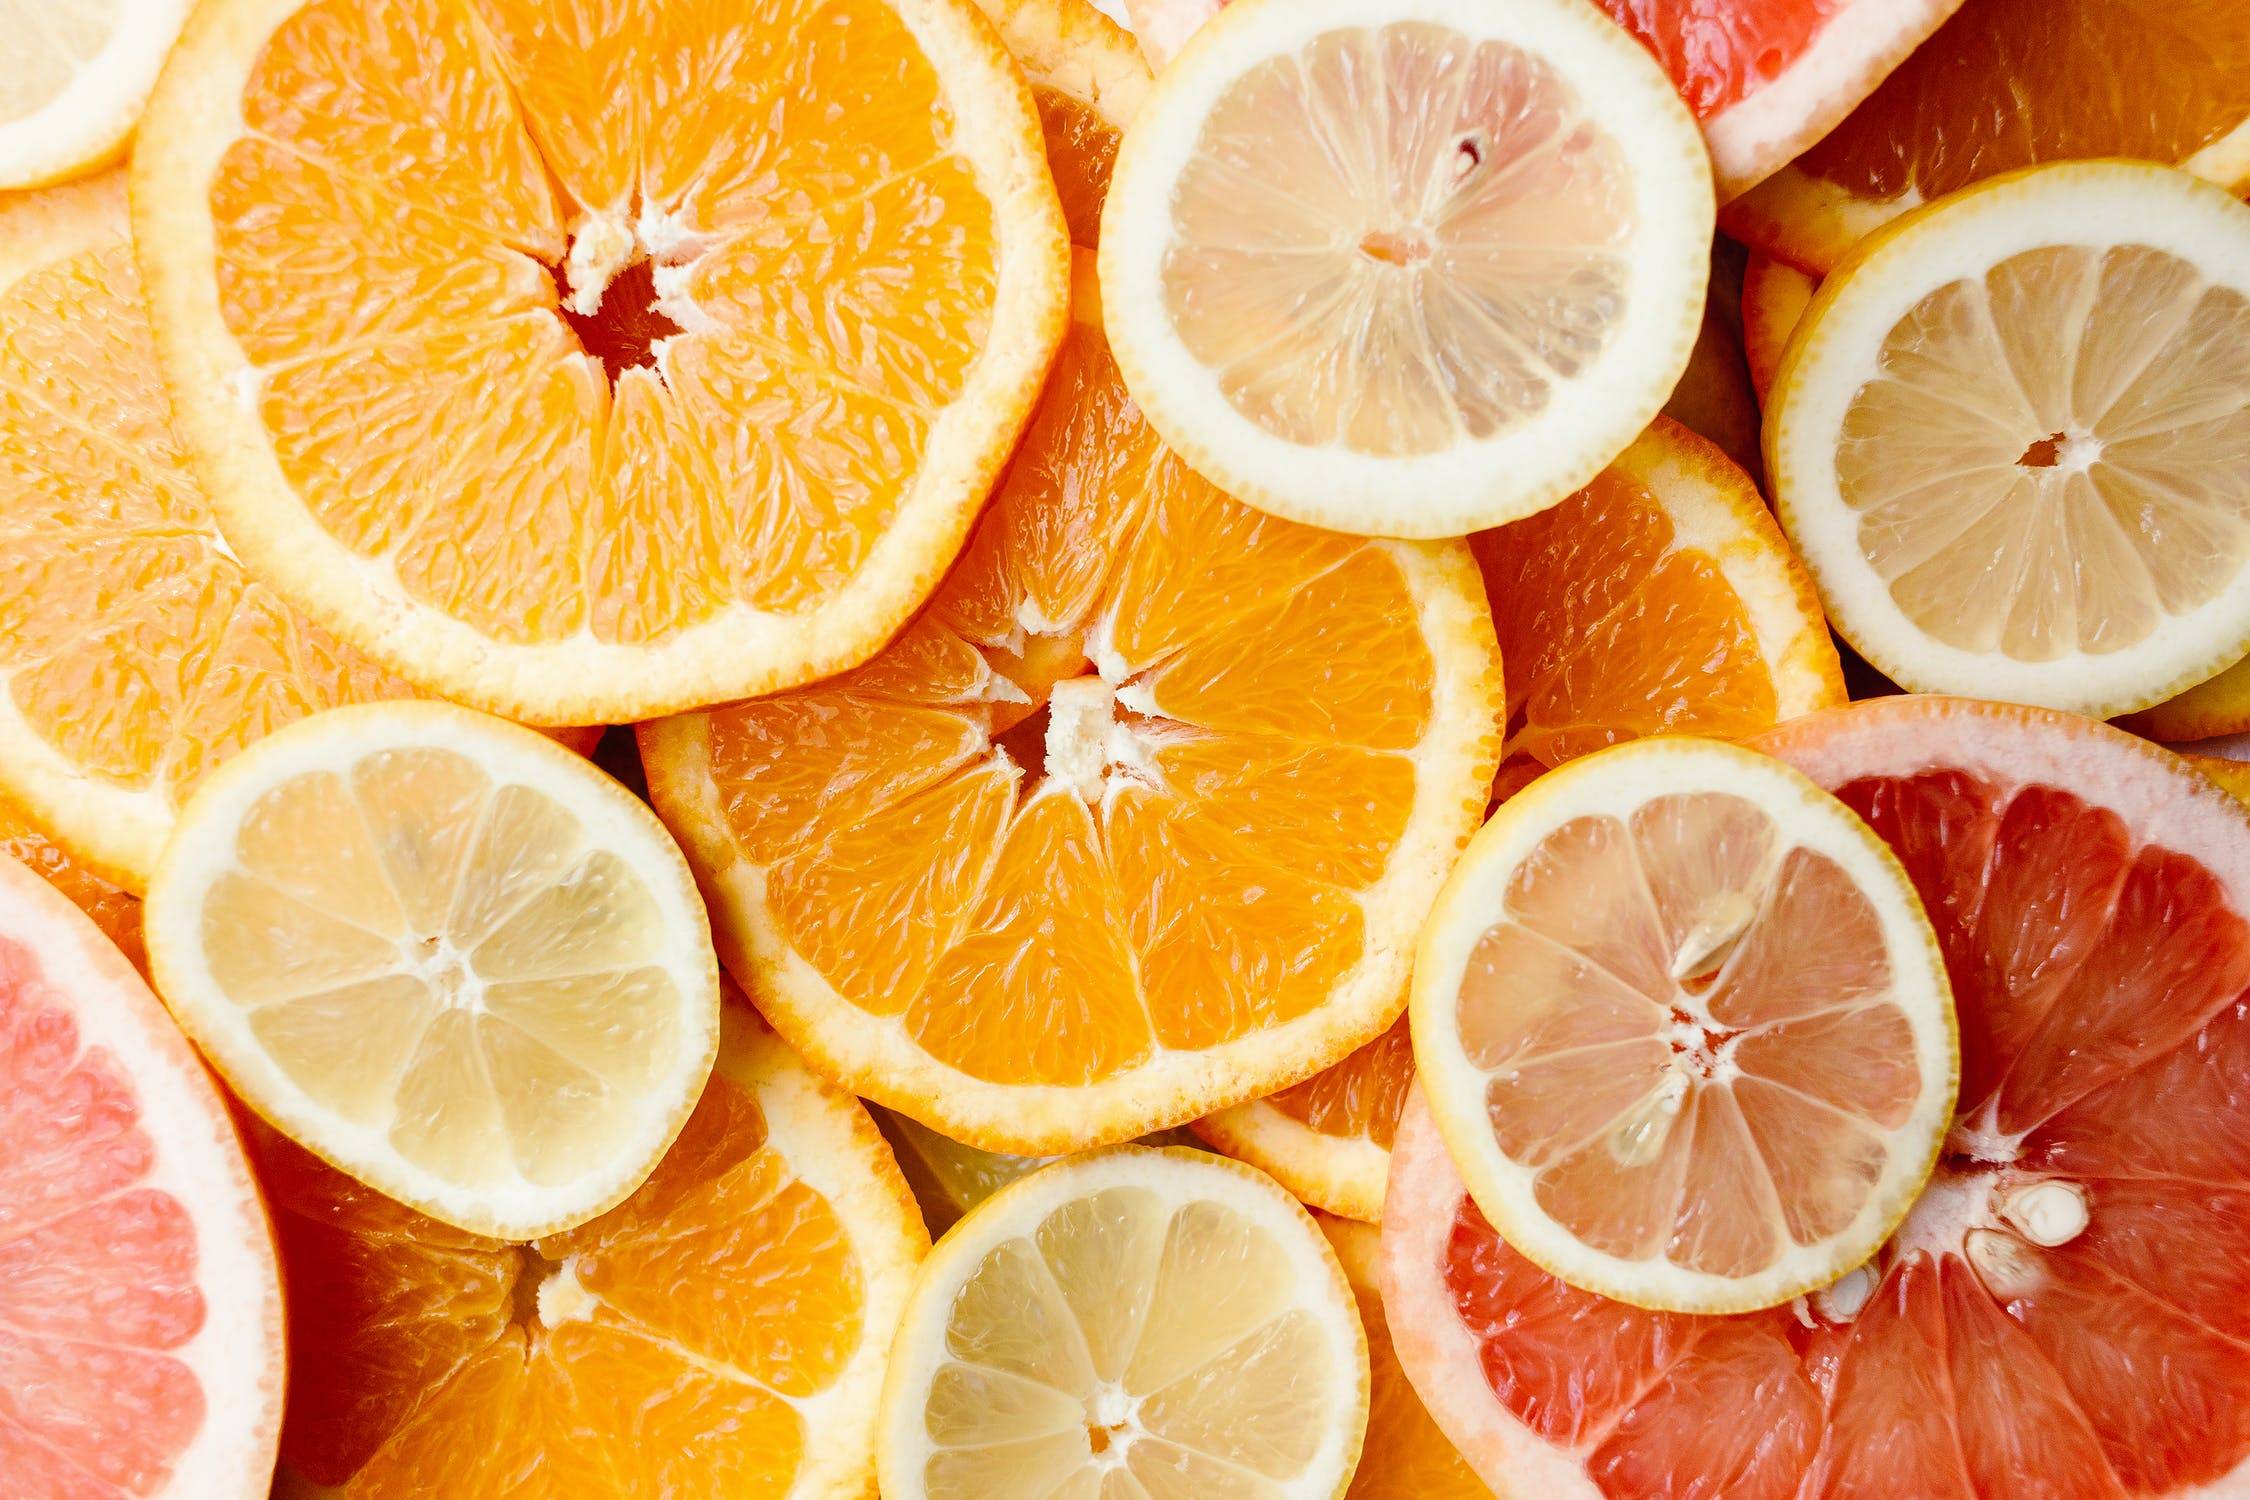 Sliced Orange Fruits